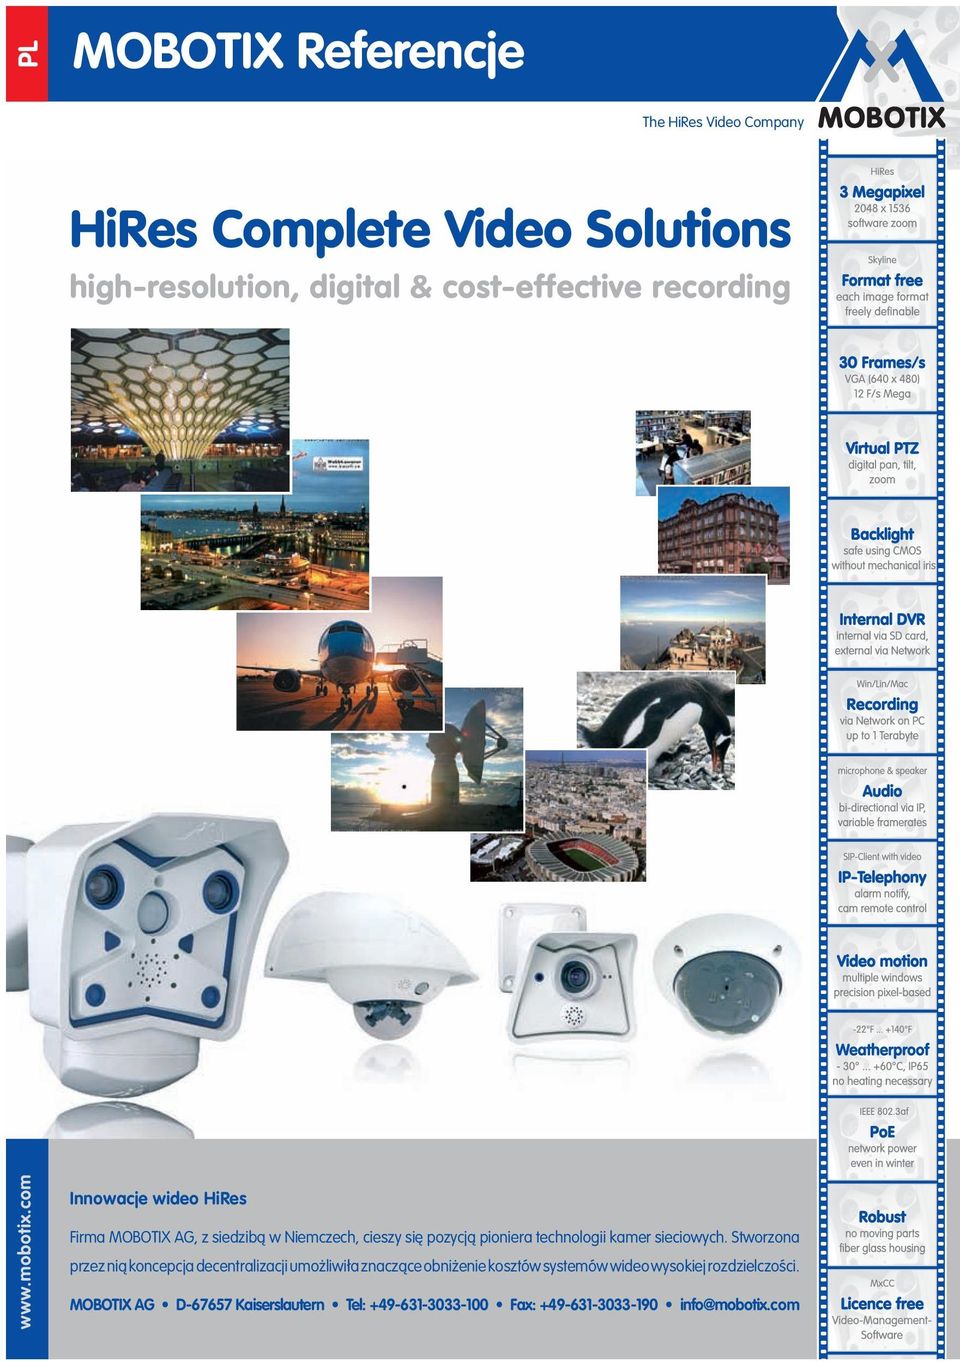 com Innowacje wideo HiRes Firma MOBOTIX AG, z siedzibą w Niemczech, cieszy się pozycją pioniera technologii kamer